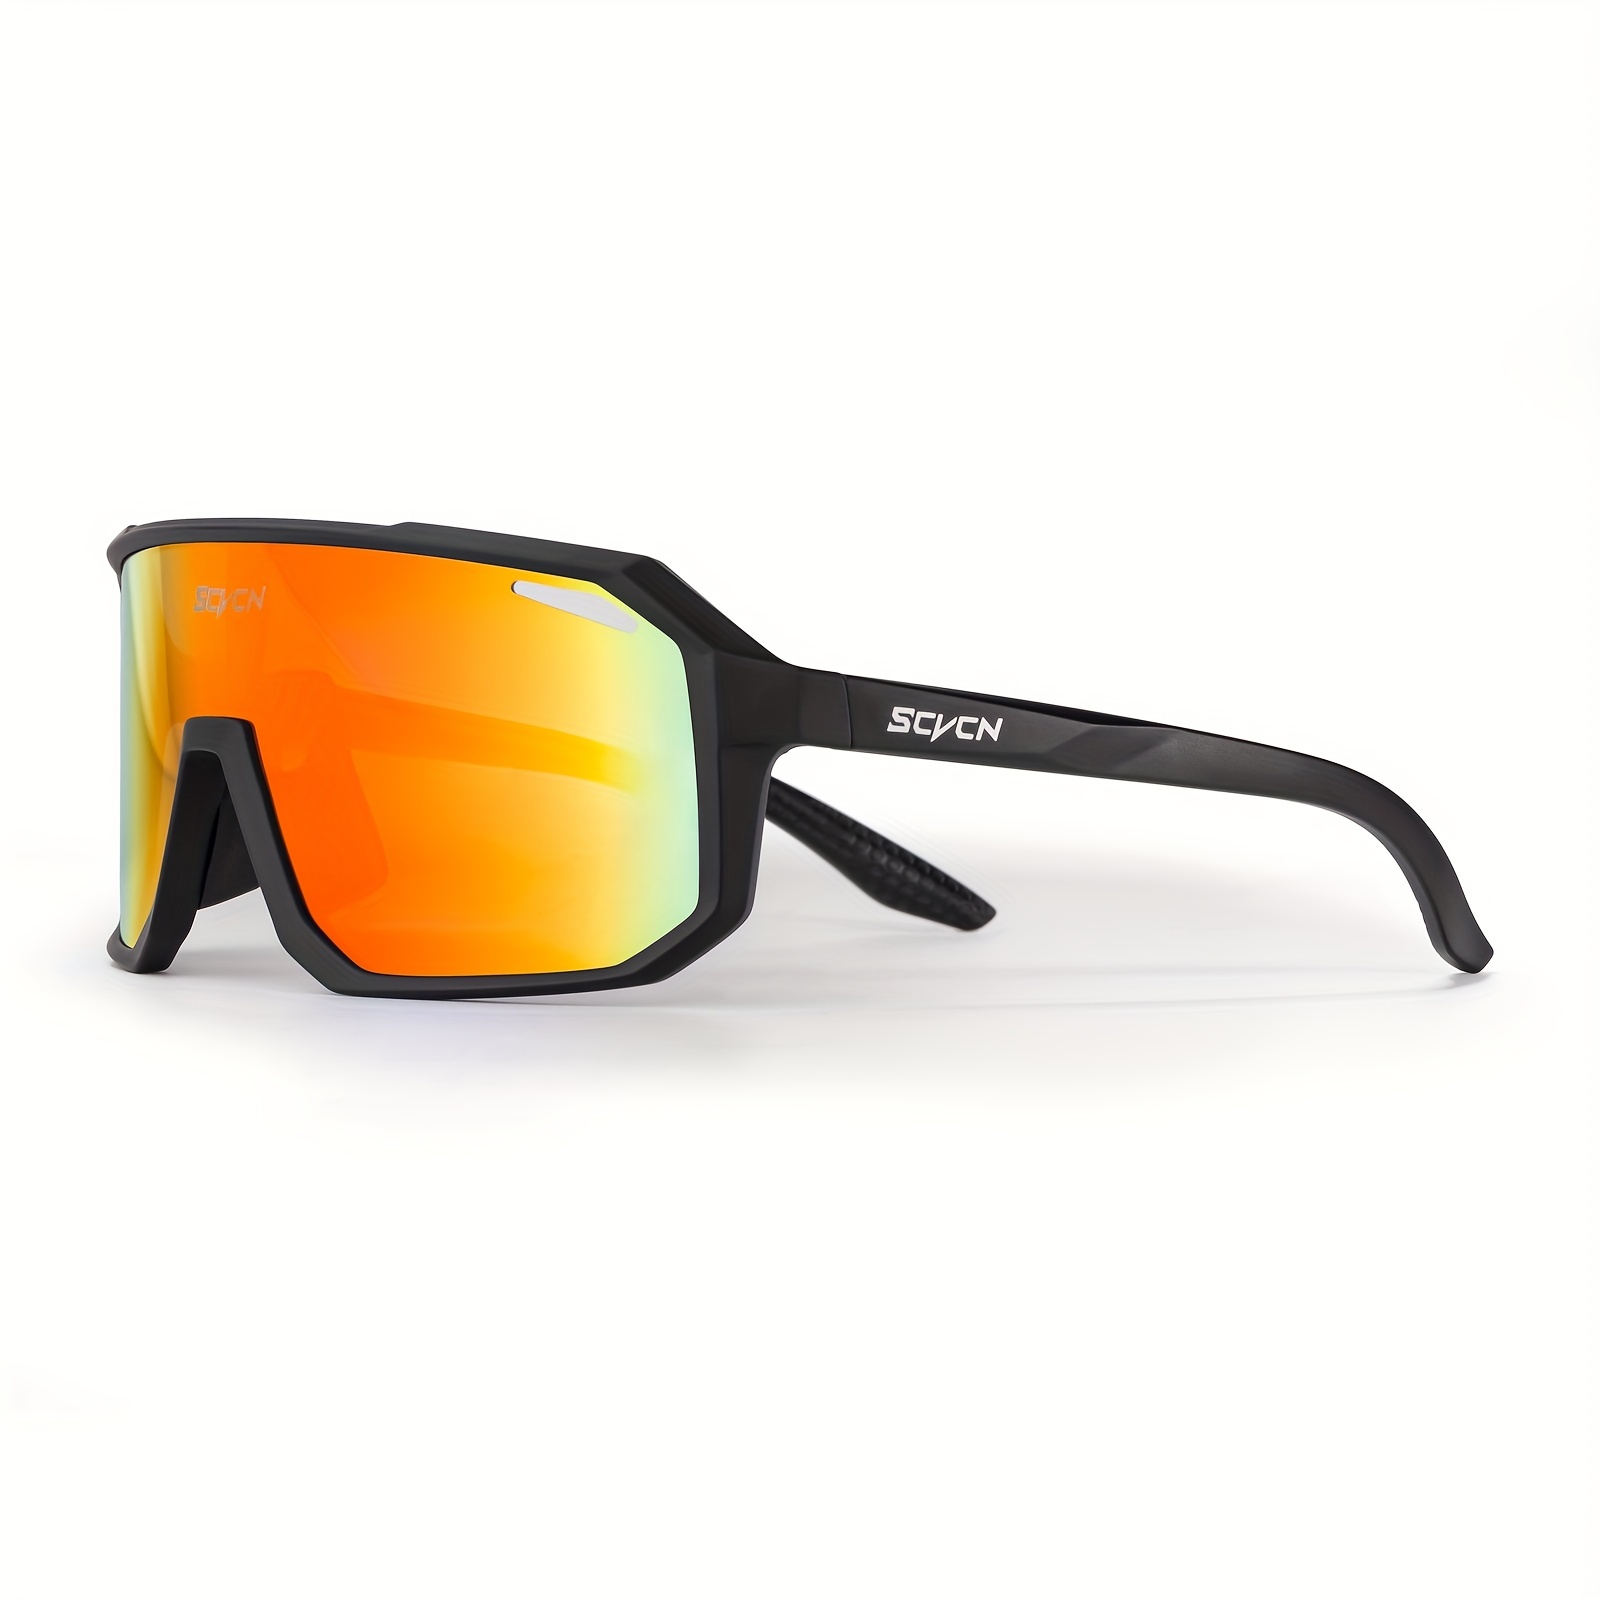  SCVCN Gafas de ciclismo polarizadas para bicicleta de montaña,  gafas de MTB TR90, gafas de sol de ciclismo para hombres y mujeres, gafas  deportivas para motocicleta, gafas de ciclismo de carretera, 